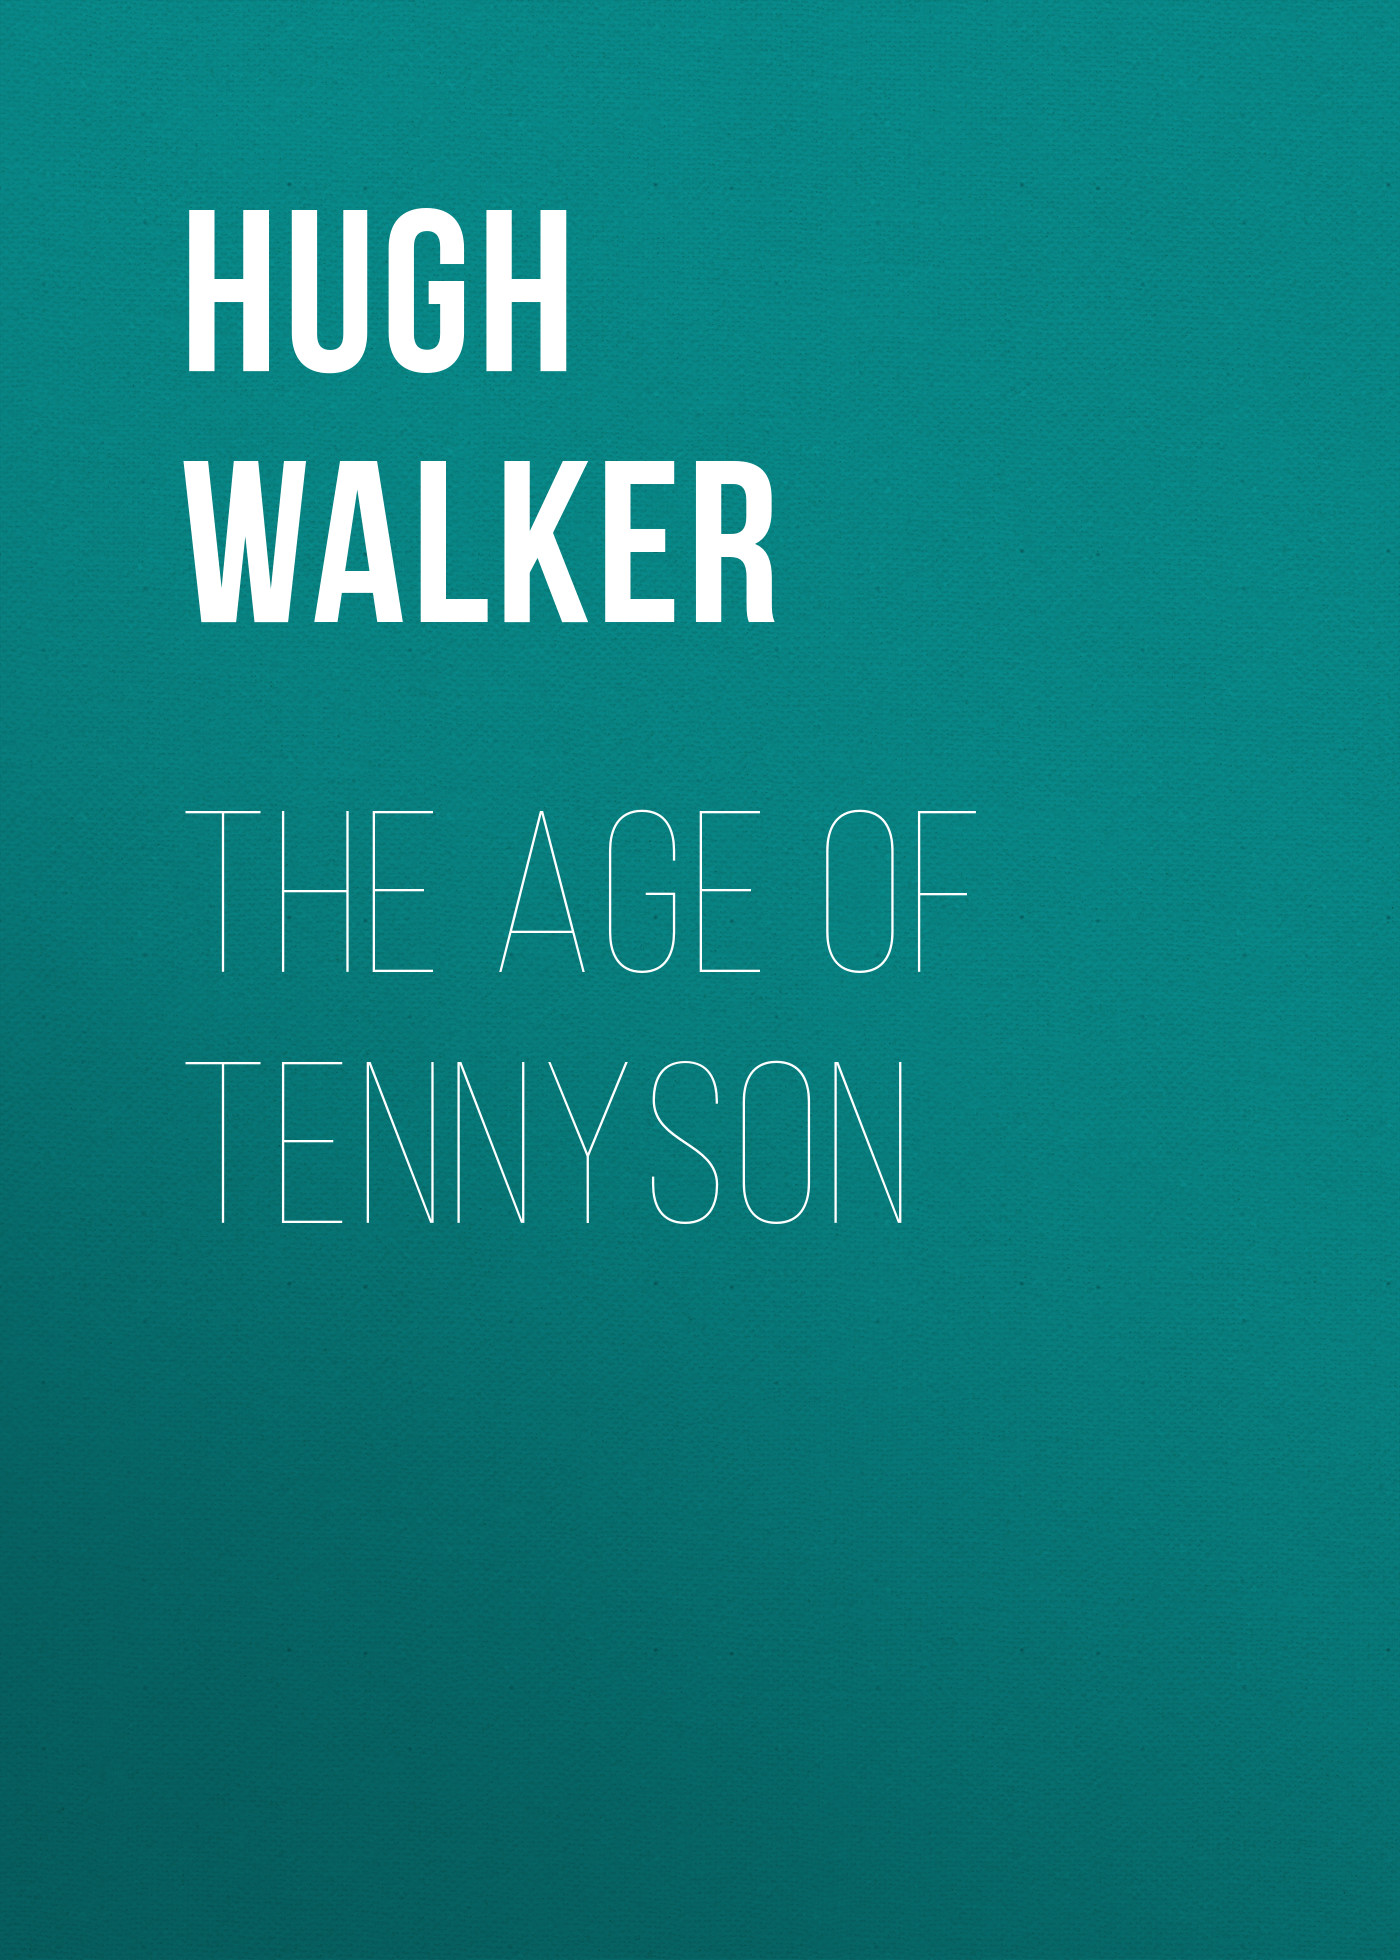 Книга The Age of Tennyson из серии , созданная Hugh Walker, может относится к жанру Зарубежная старинная литература, Критика, Литература 19 века. Стоимость электронной книги The Age of Tennyson с идентификатором 34282576 составляет 0 руб.